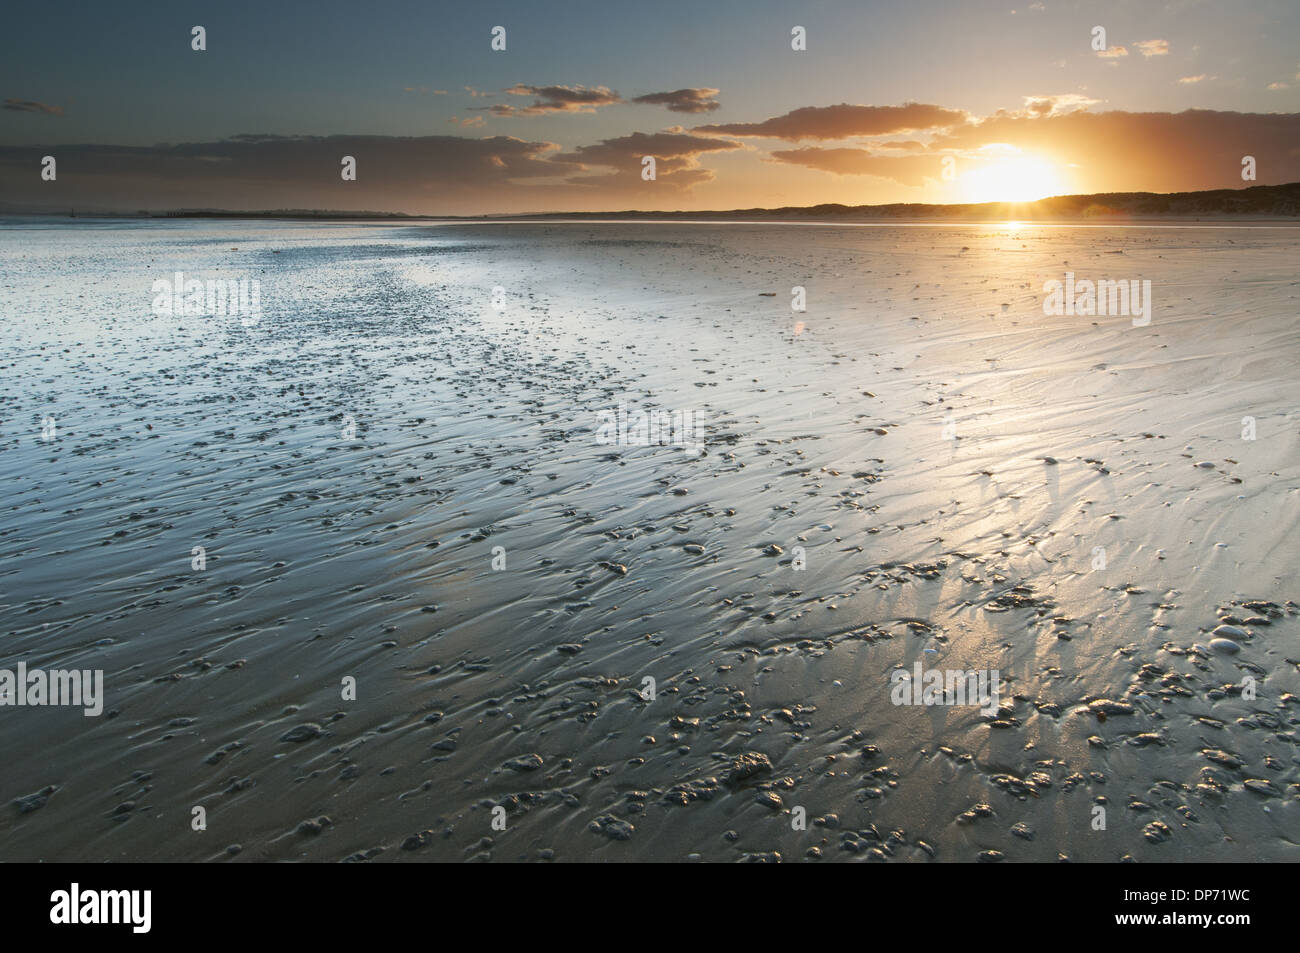 Vue sur plage de sable à marée basse au coucher du soleil, Camber Sands, East Sussex, Angleterre, juin Banque D'Images